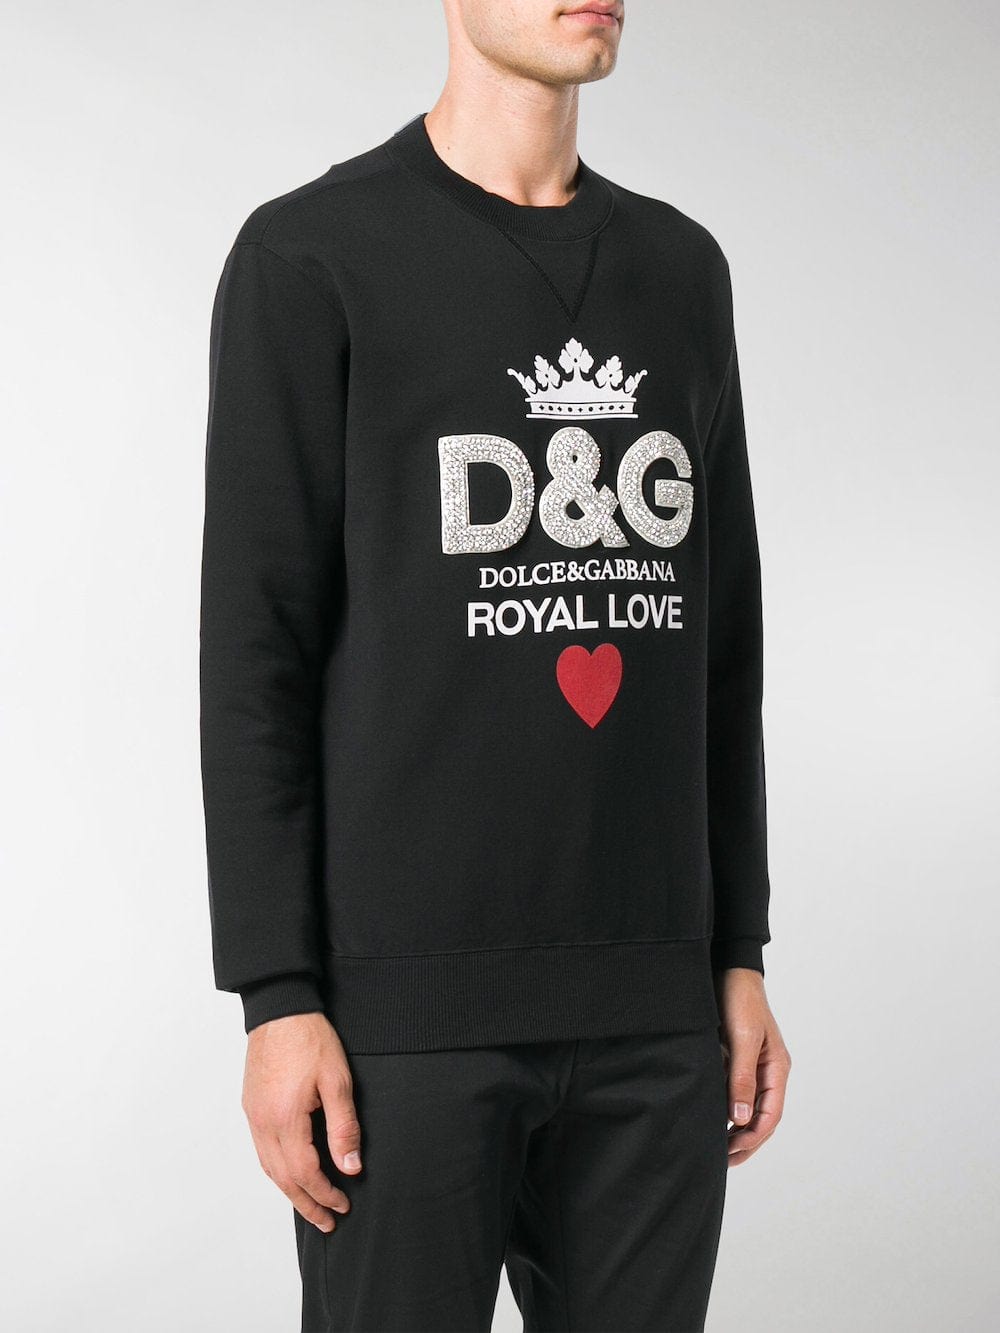 Dolce & Gabbana Royal Love Sweatshirt